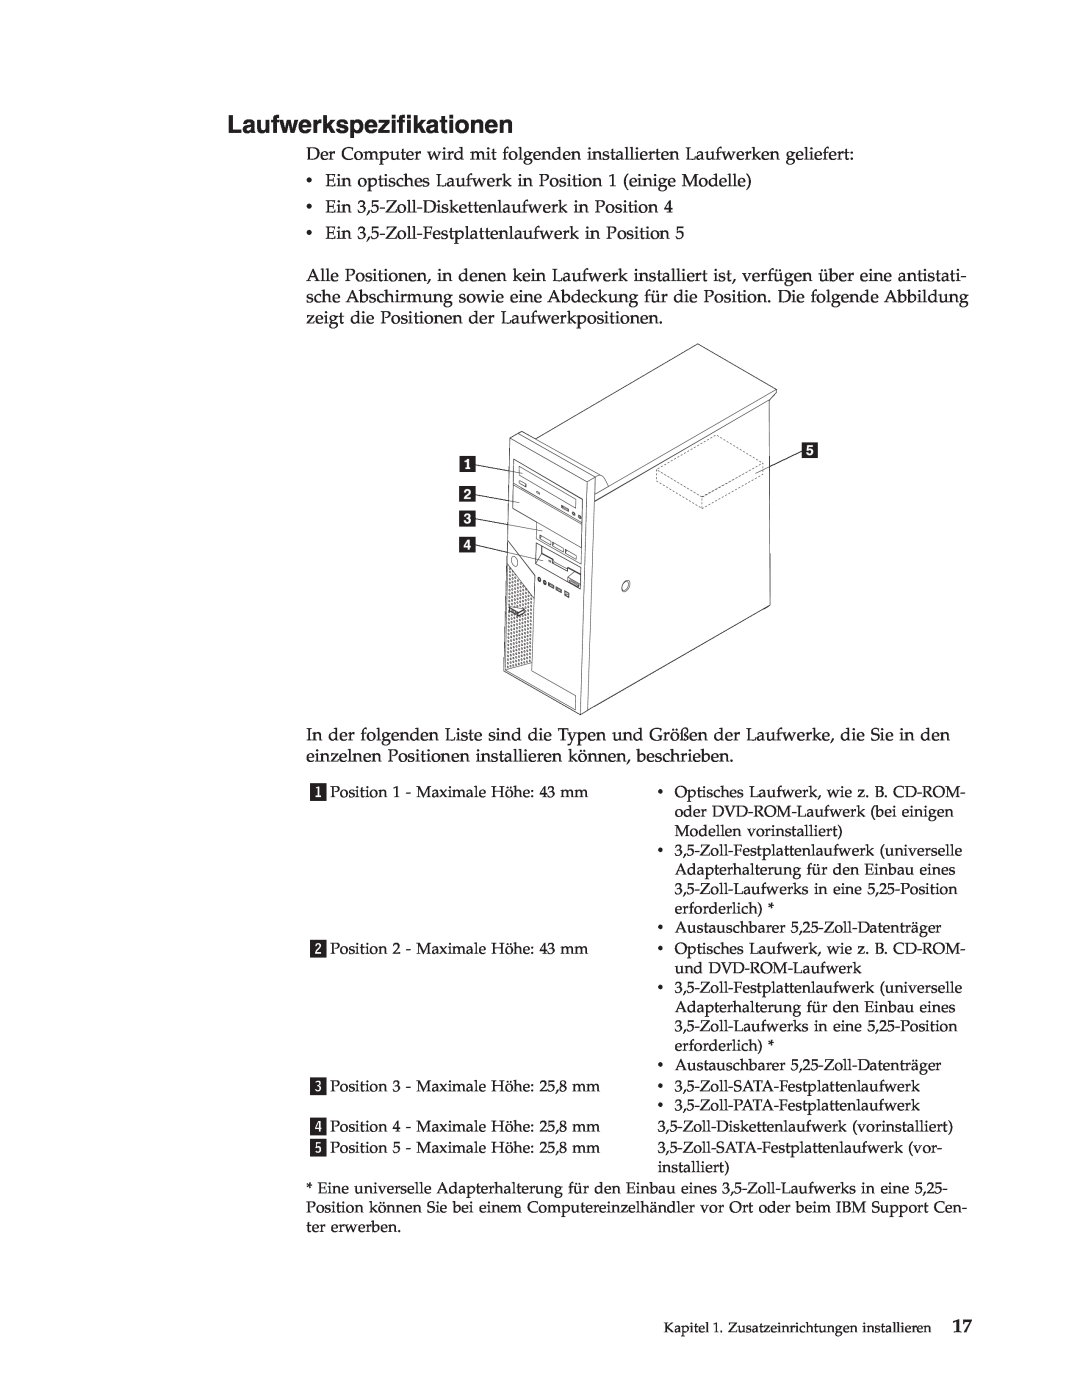 IBM 9213, 9212 manual Laufwerkspezifikationen 